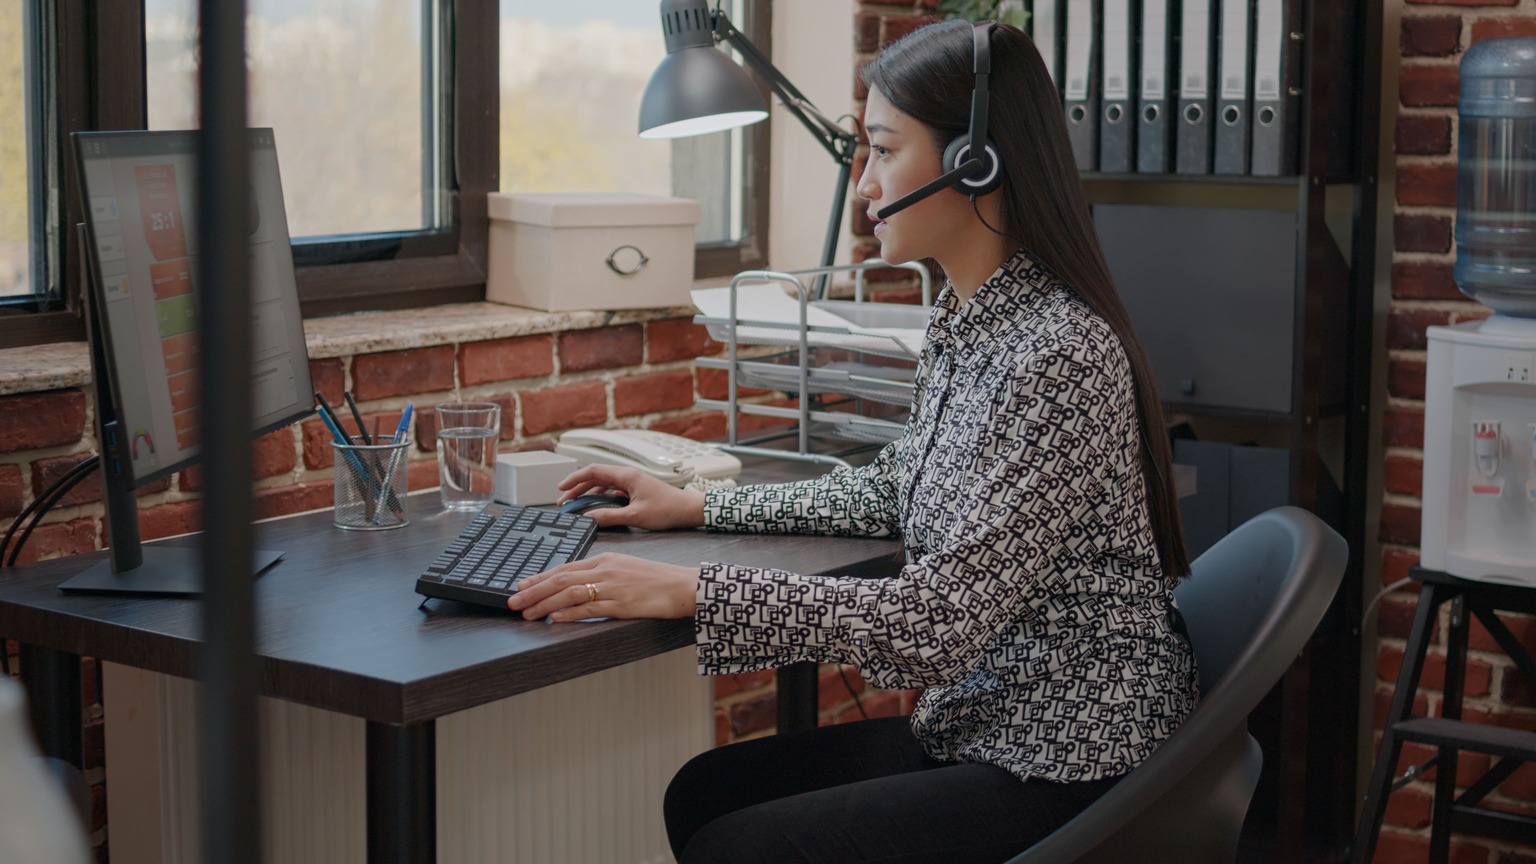 Mulher trabalhando em frente ao computador com fone de ouvido na orelha